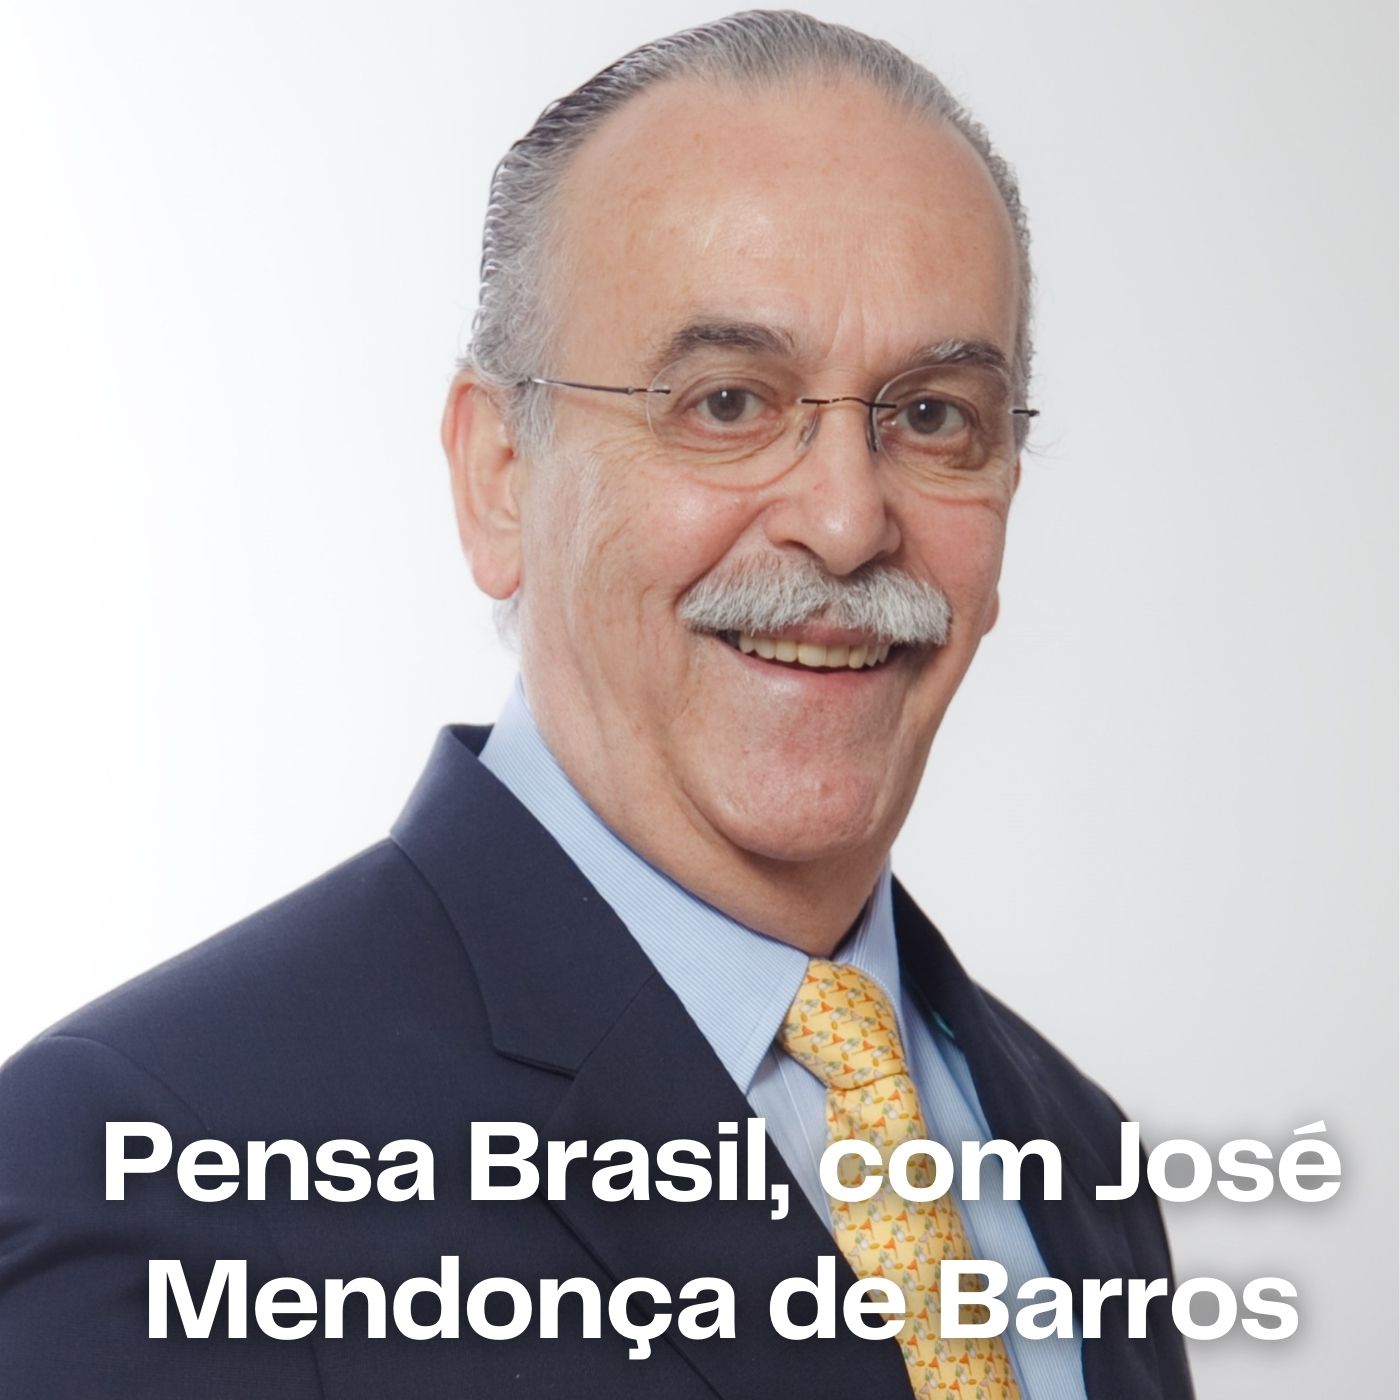 20/08/2019 – Como o atual contexto econômico mundial afeta o Brasil